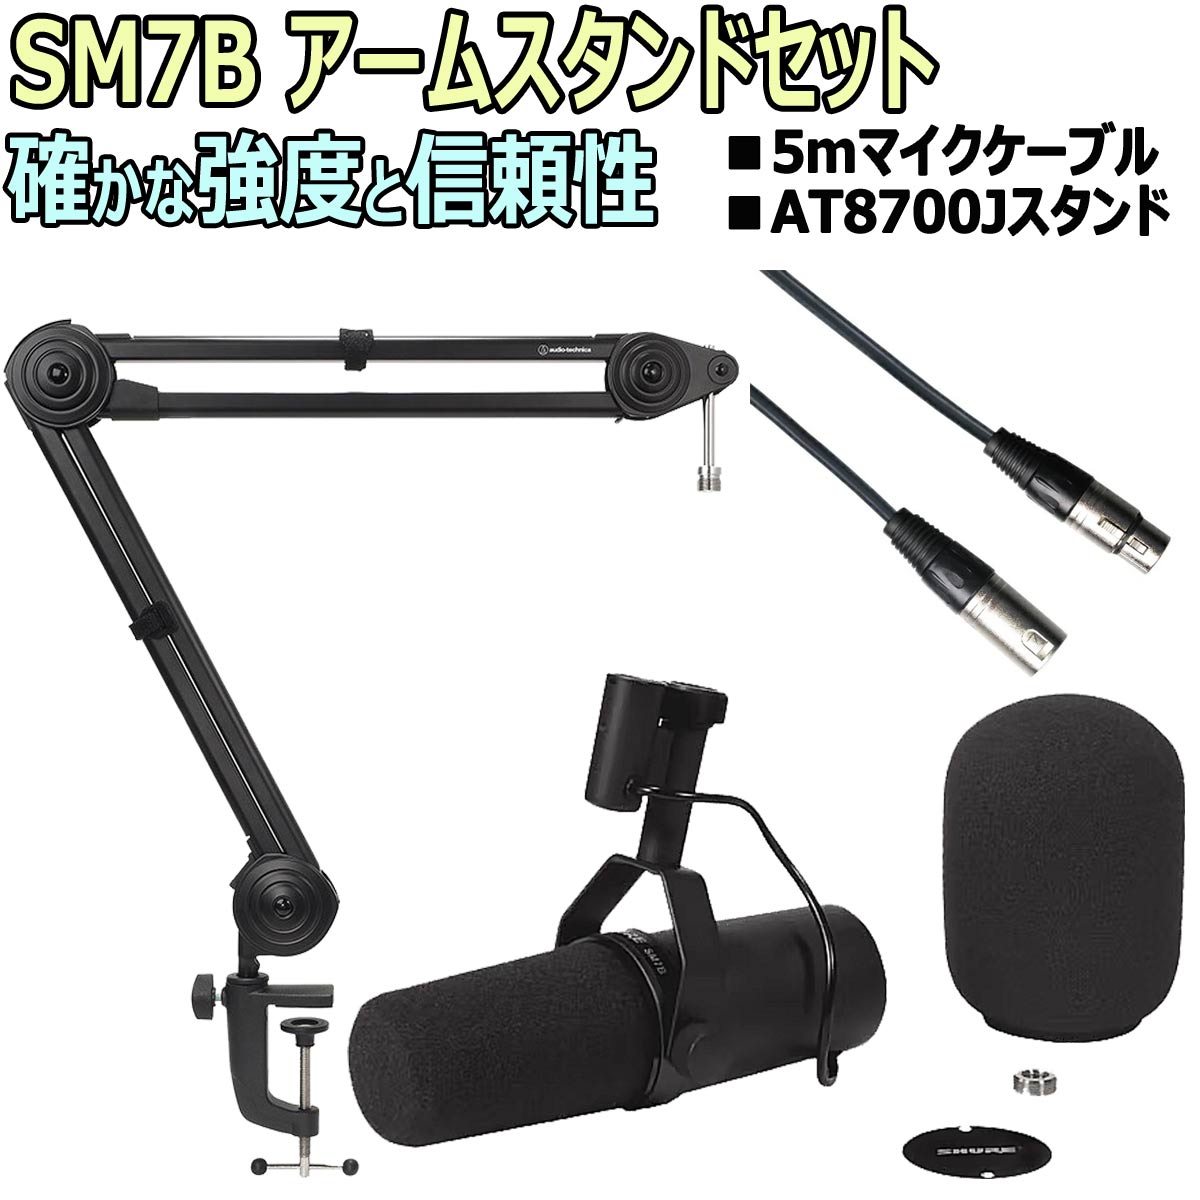 SHURE シュア   SM7B スタジオマイクロフォン アームスタンドセット -5mマイクケーブル、AT8700アームスタンド-